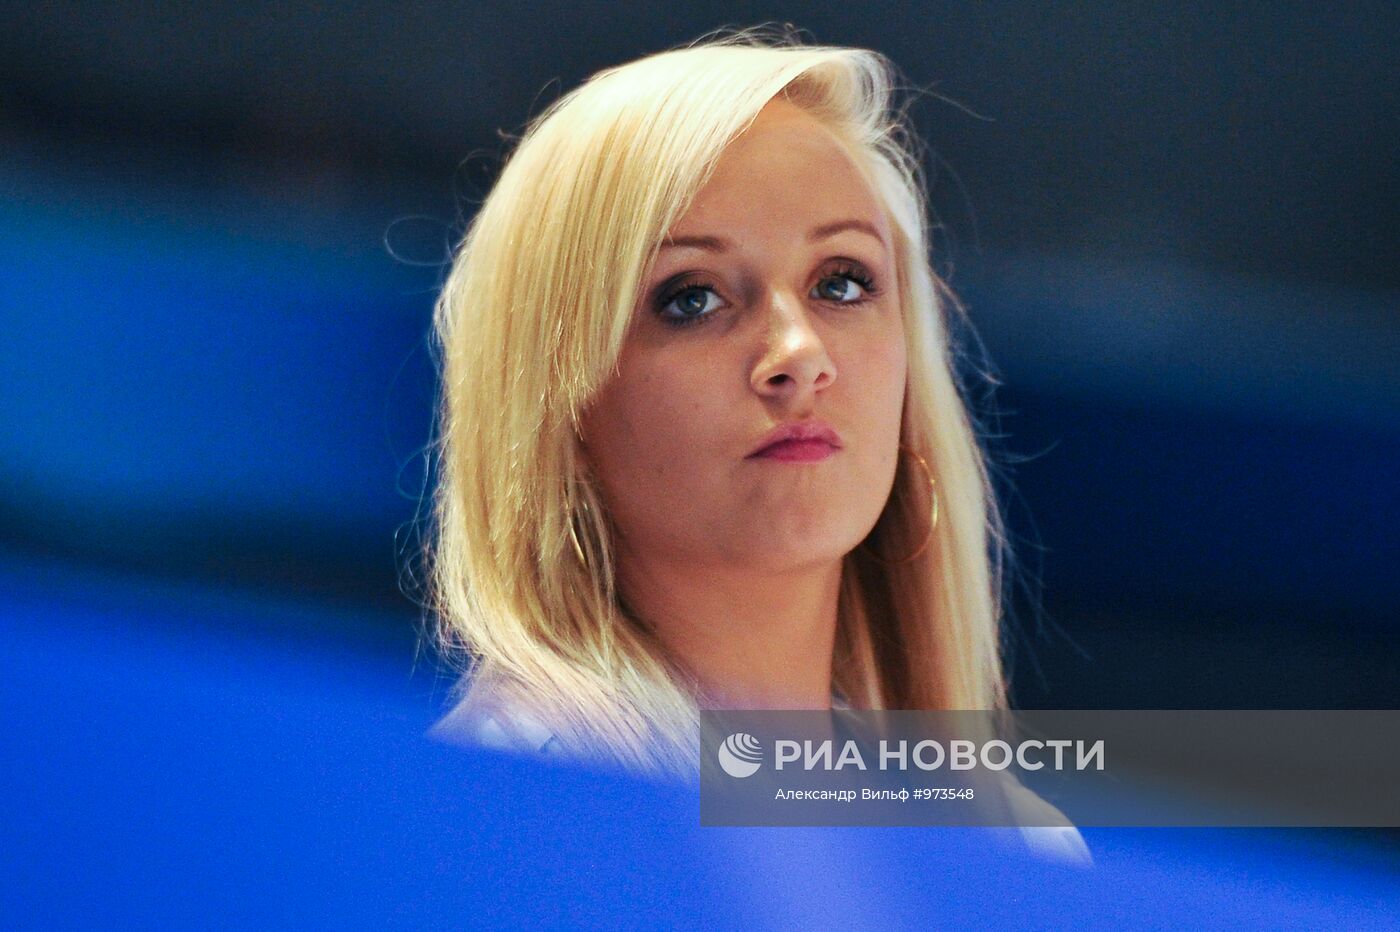 Американская гимнастка российского происхождения Настя Люкин